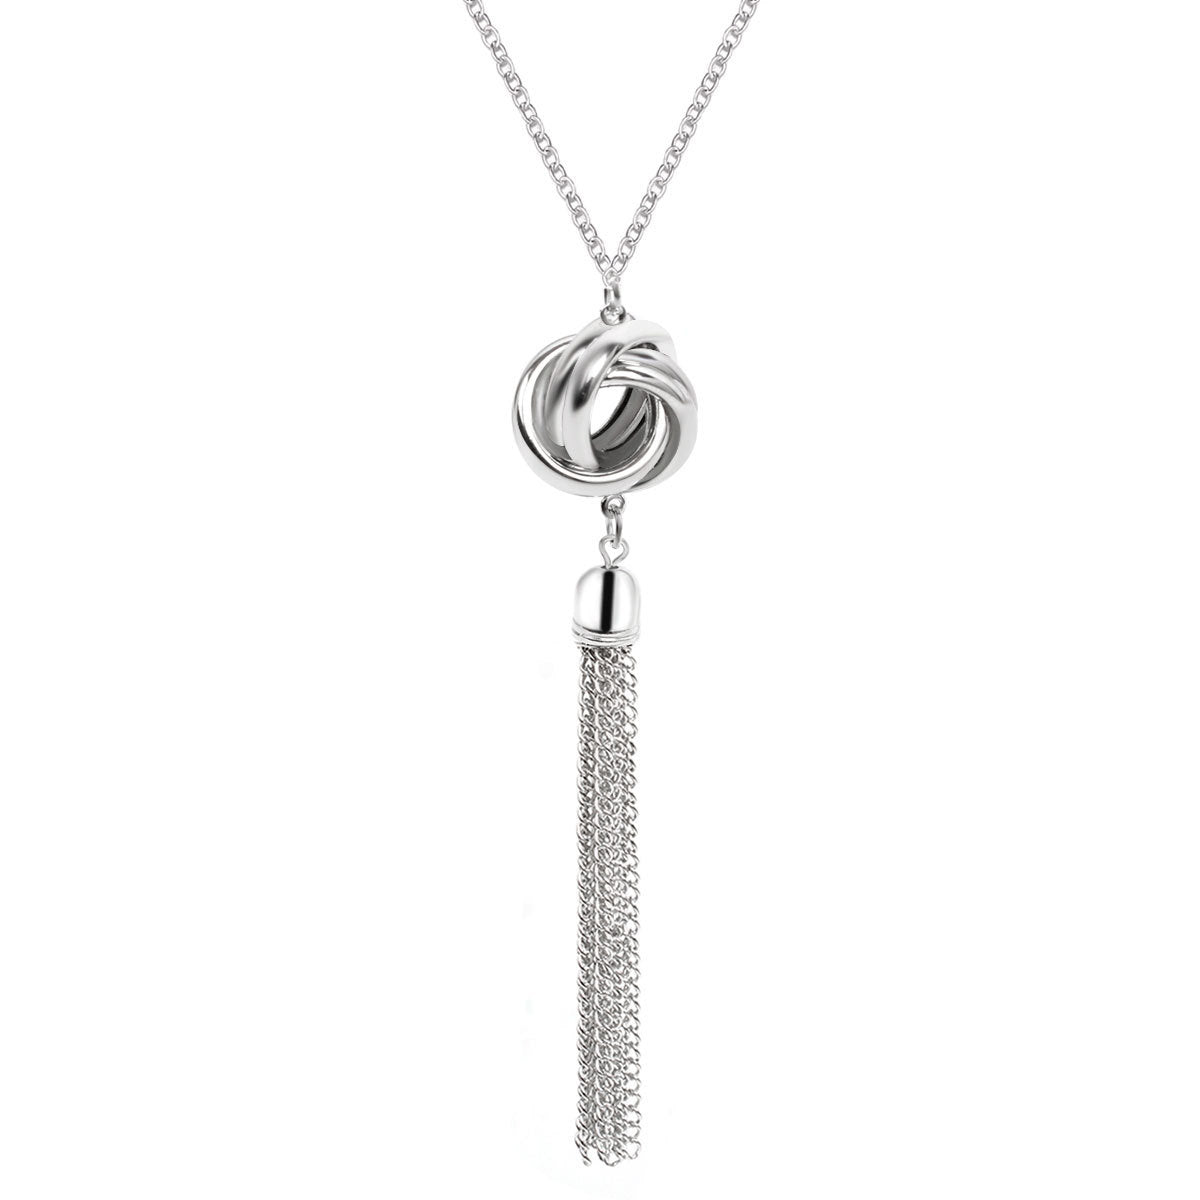 Accessories New Chain Tassel Necklace Women